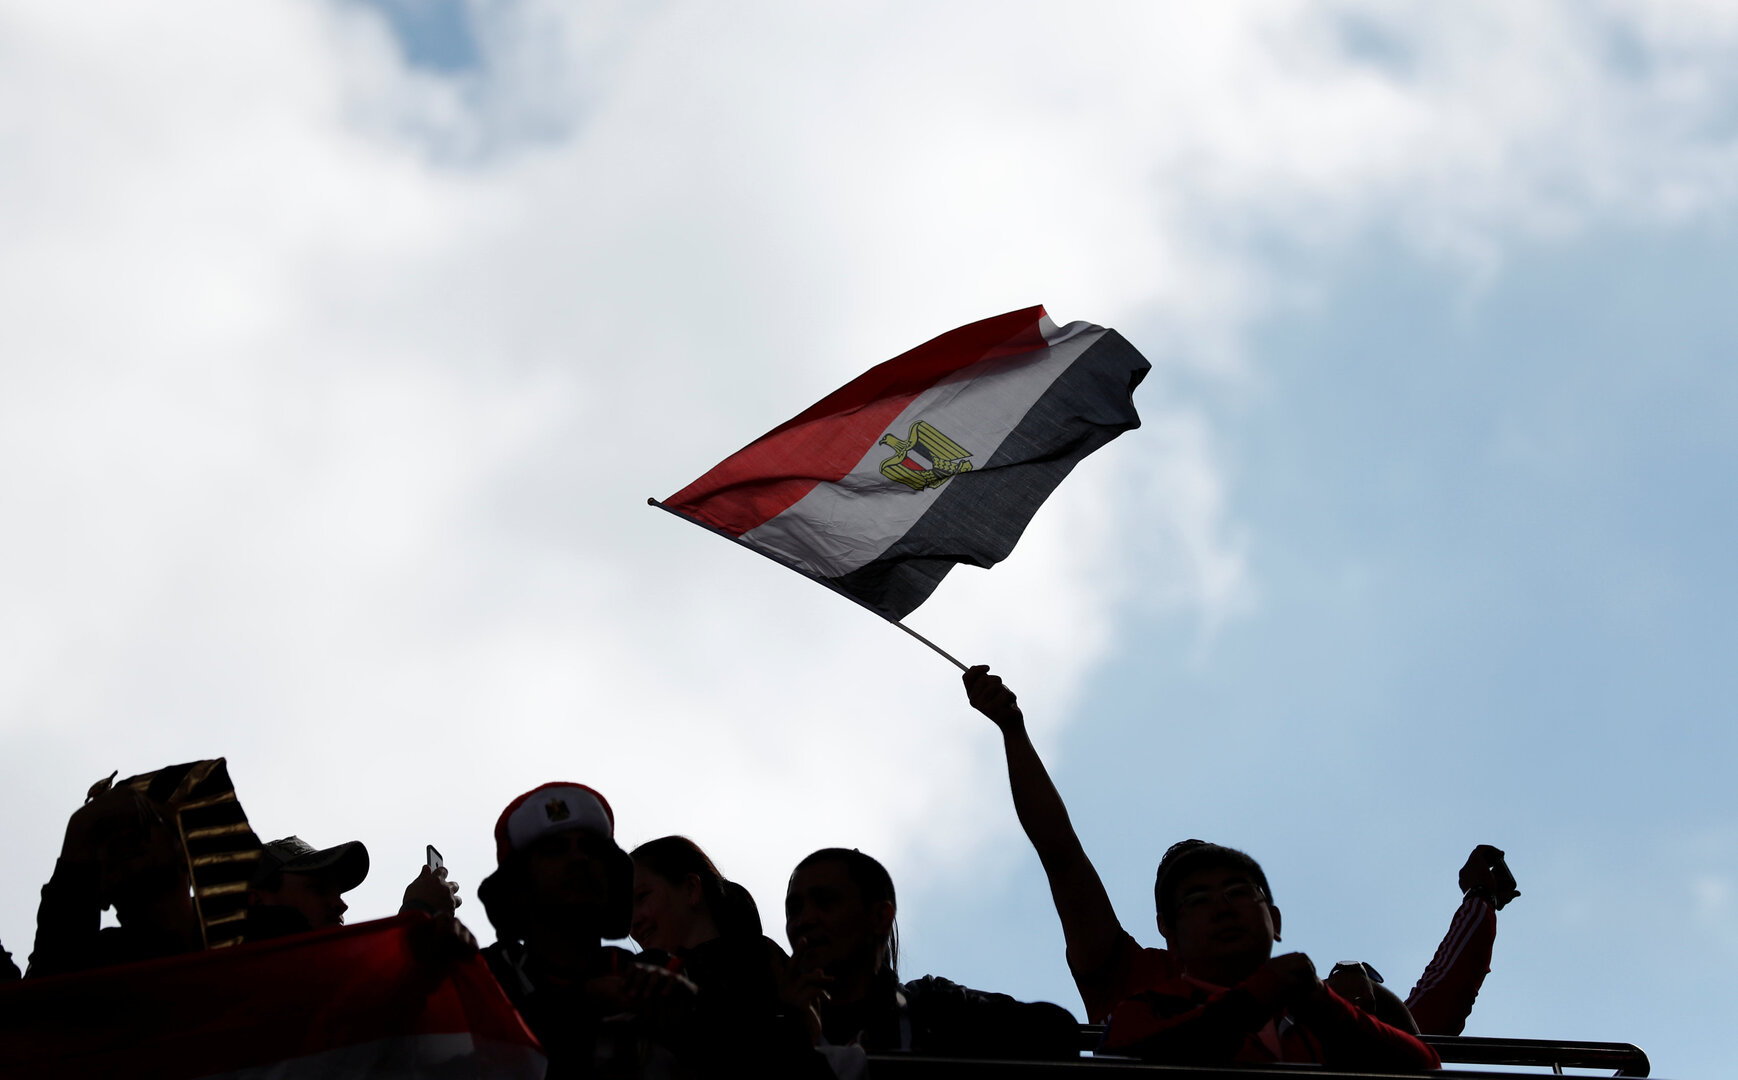 مصر تصدر قرارات جديدة بعد إلغاء حظر التجوال وعودة الحياة لطبيعتها